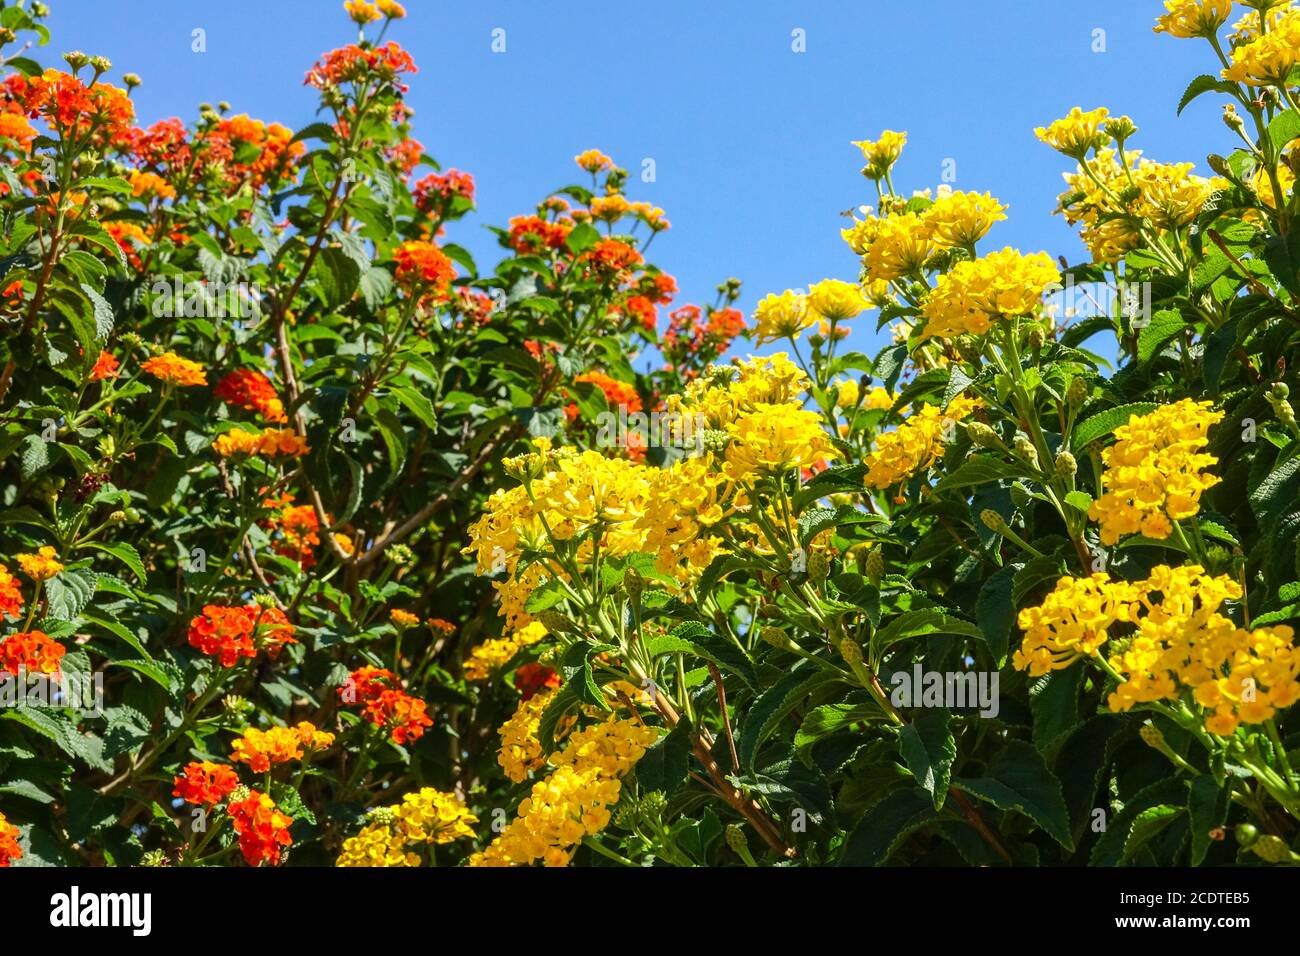 Lantana camara jaune orangé arbustes fleurs Lantana jaune Banque D'Images